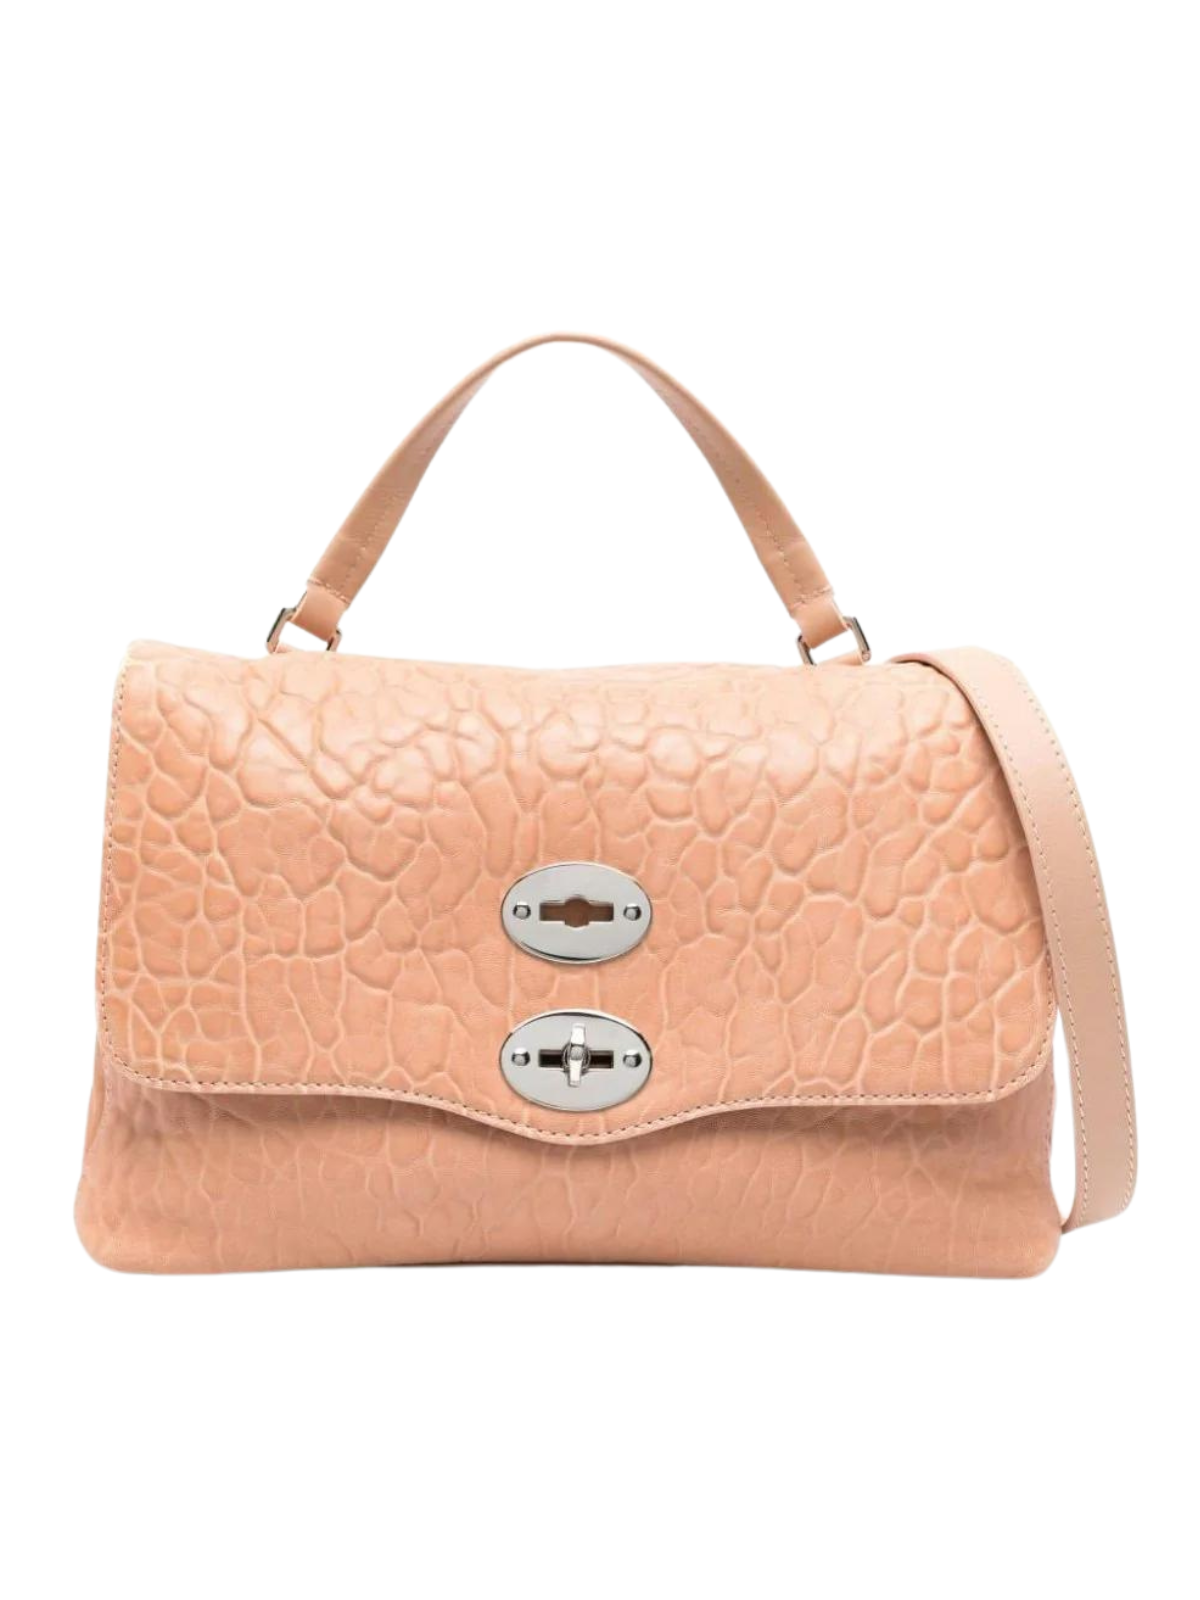 Postina S Leather Handbag